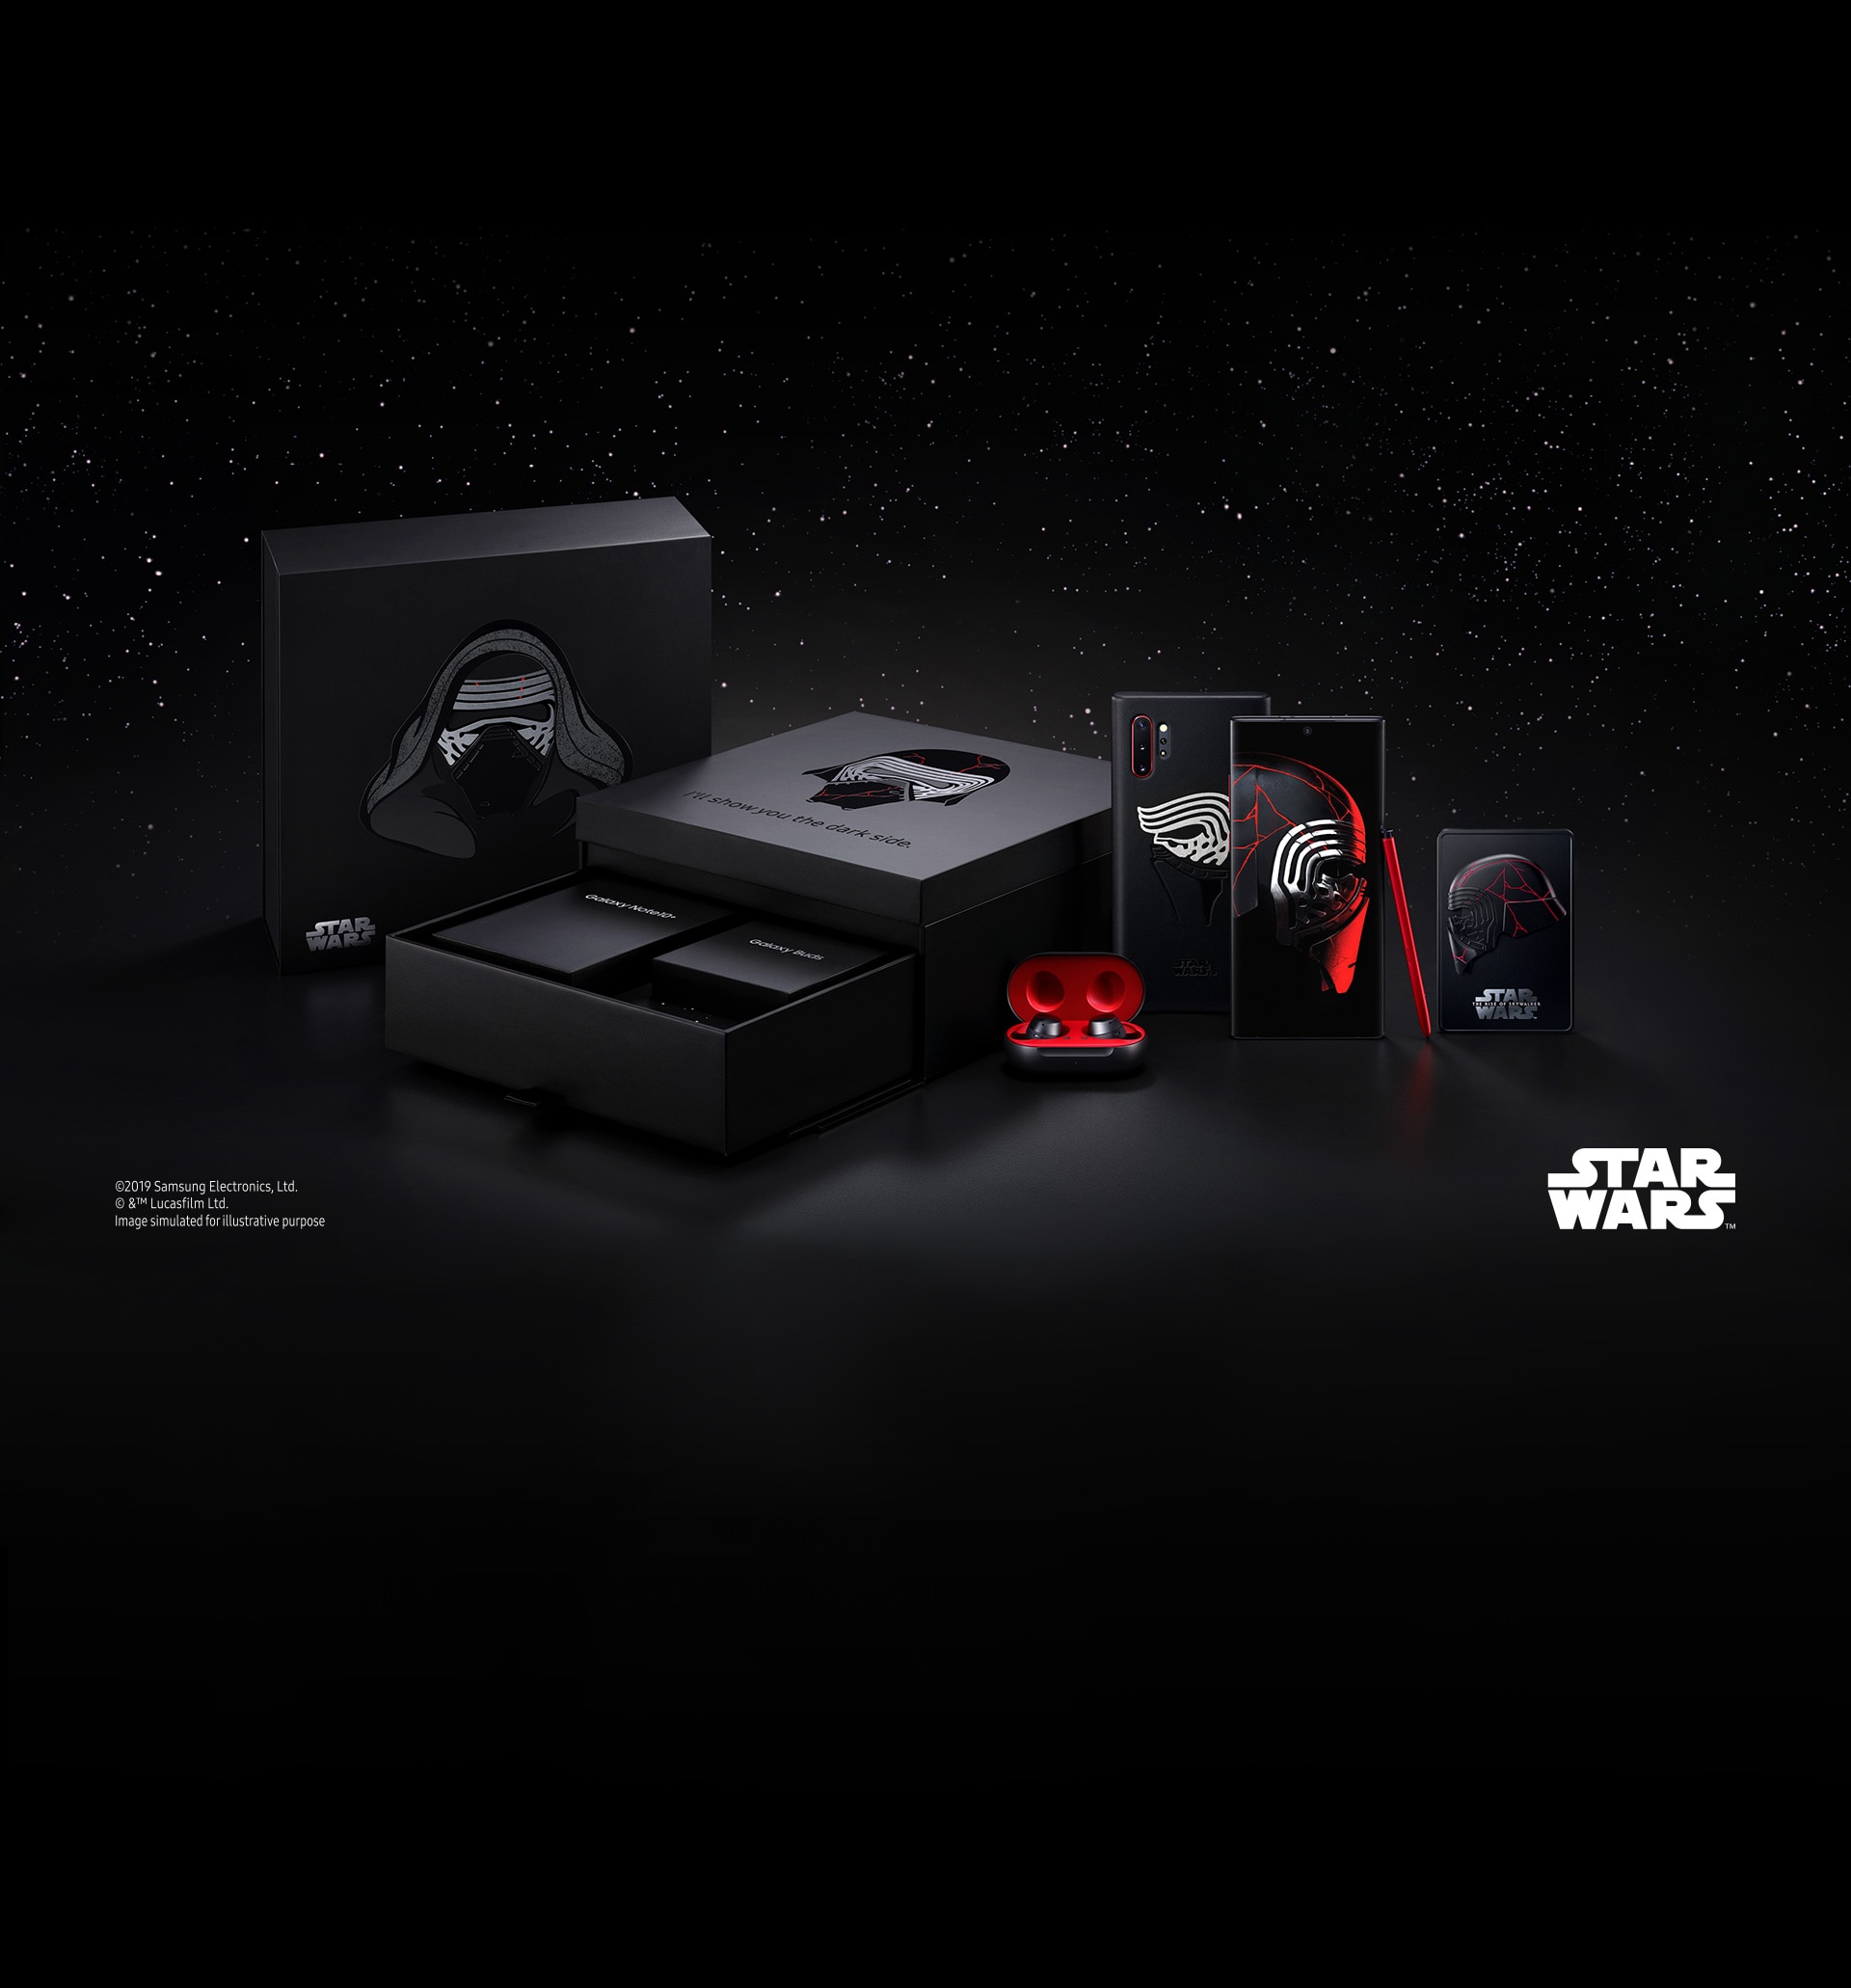 The Force está oficialmente con Galaxy Note 10+: Star Wars Edition llega el 10 de diciembre (foto)